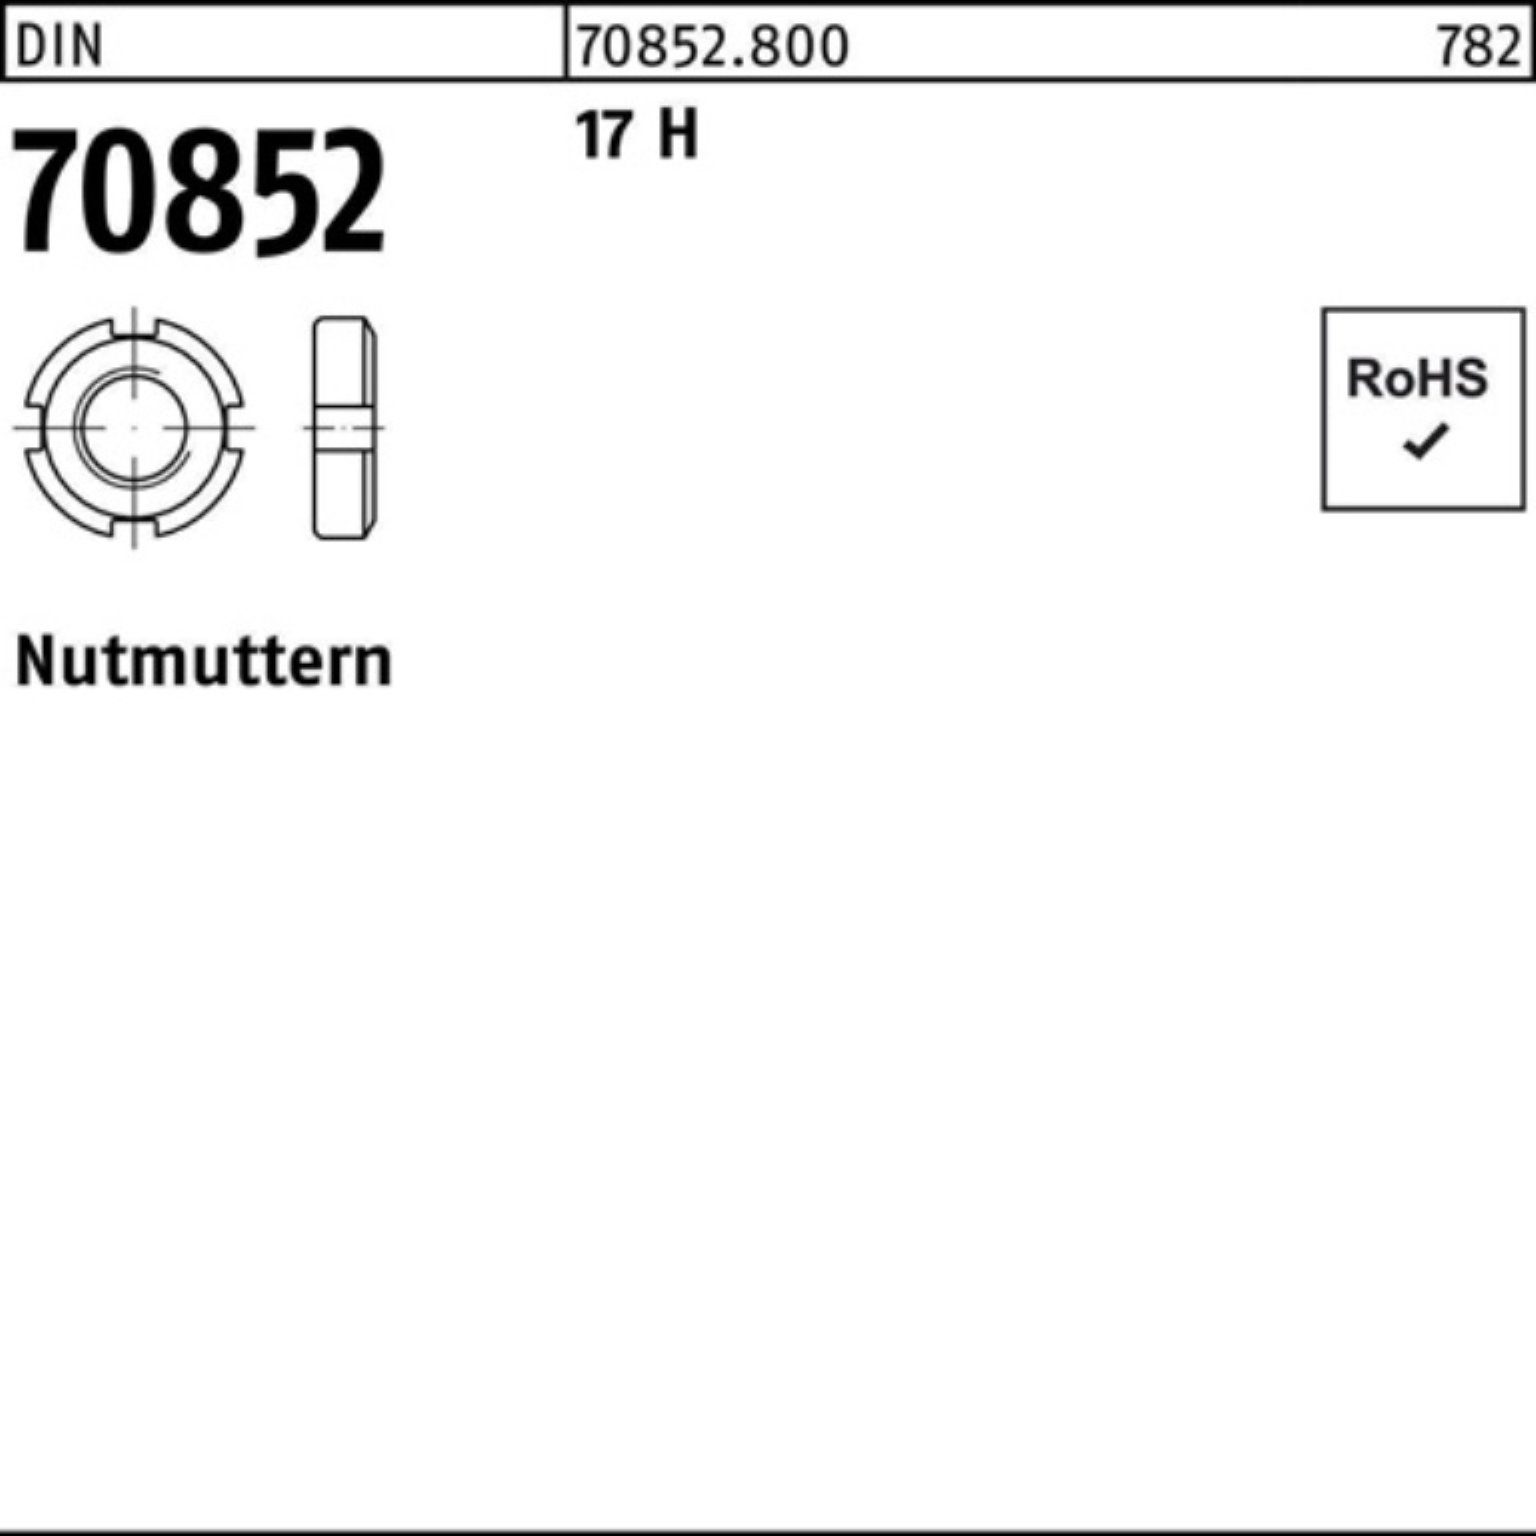 H 17 Pack 17 1 Nutmutter H DIN 1,5 N M38x DIN 70852 70852 100er Reyher Nutmutter Stück